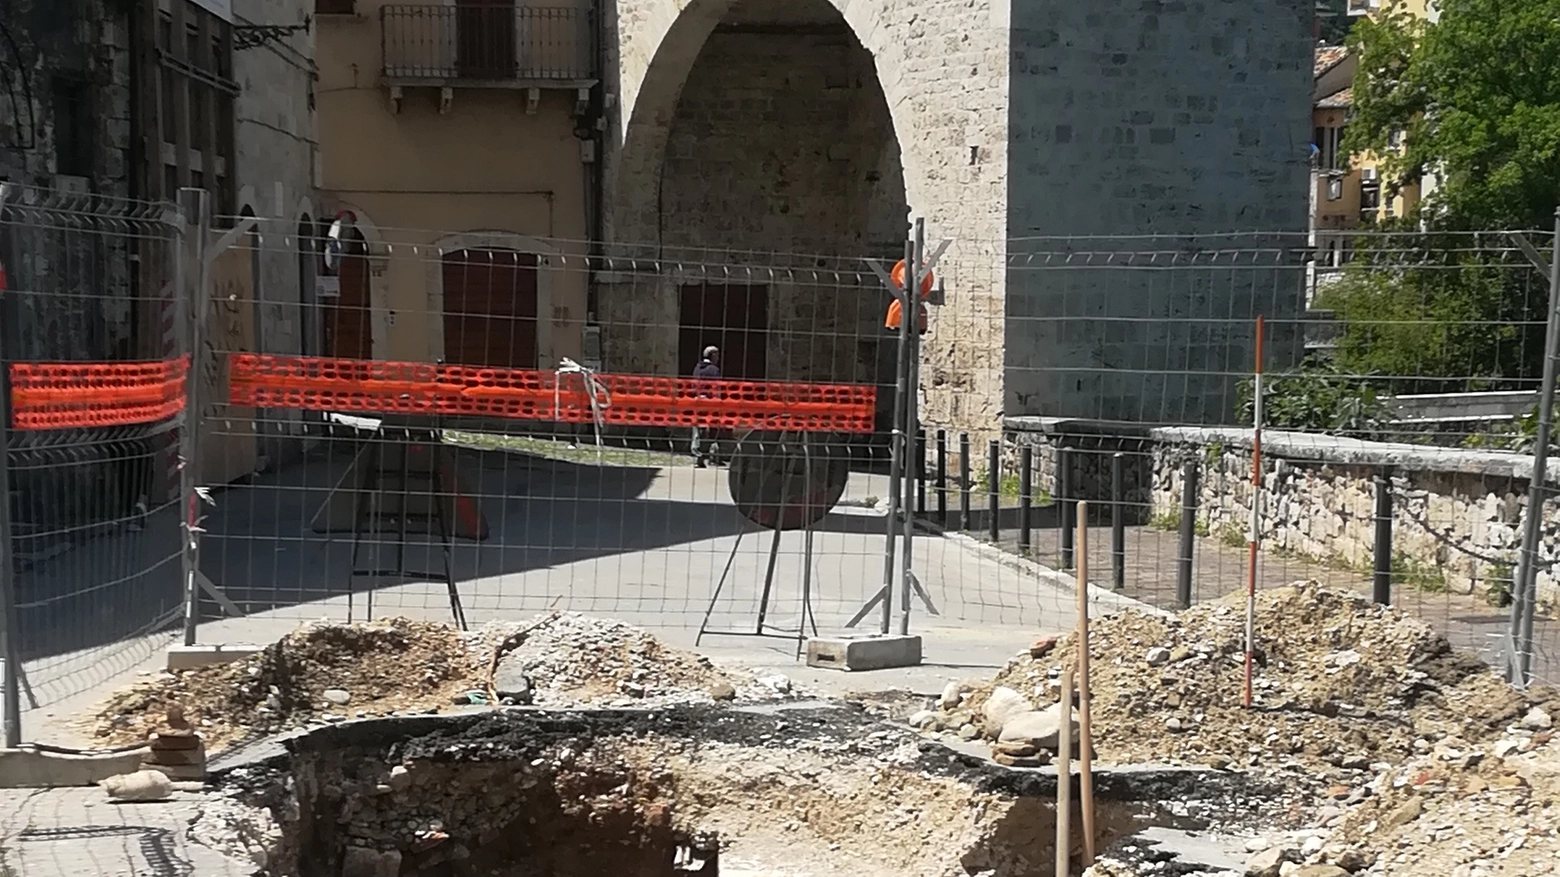 Lavori in corso in via Trebbiani, ritrovato muro di epoca tardo medievale